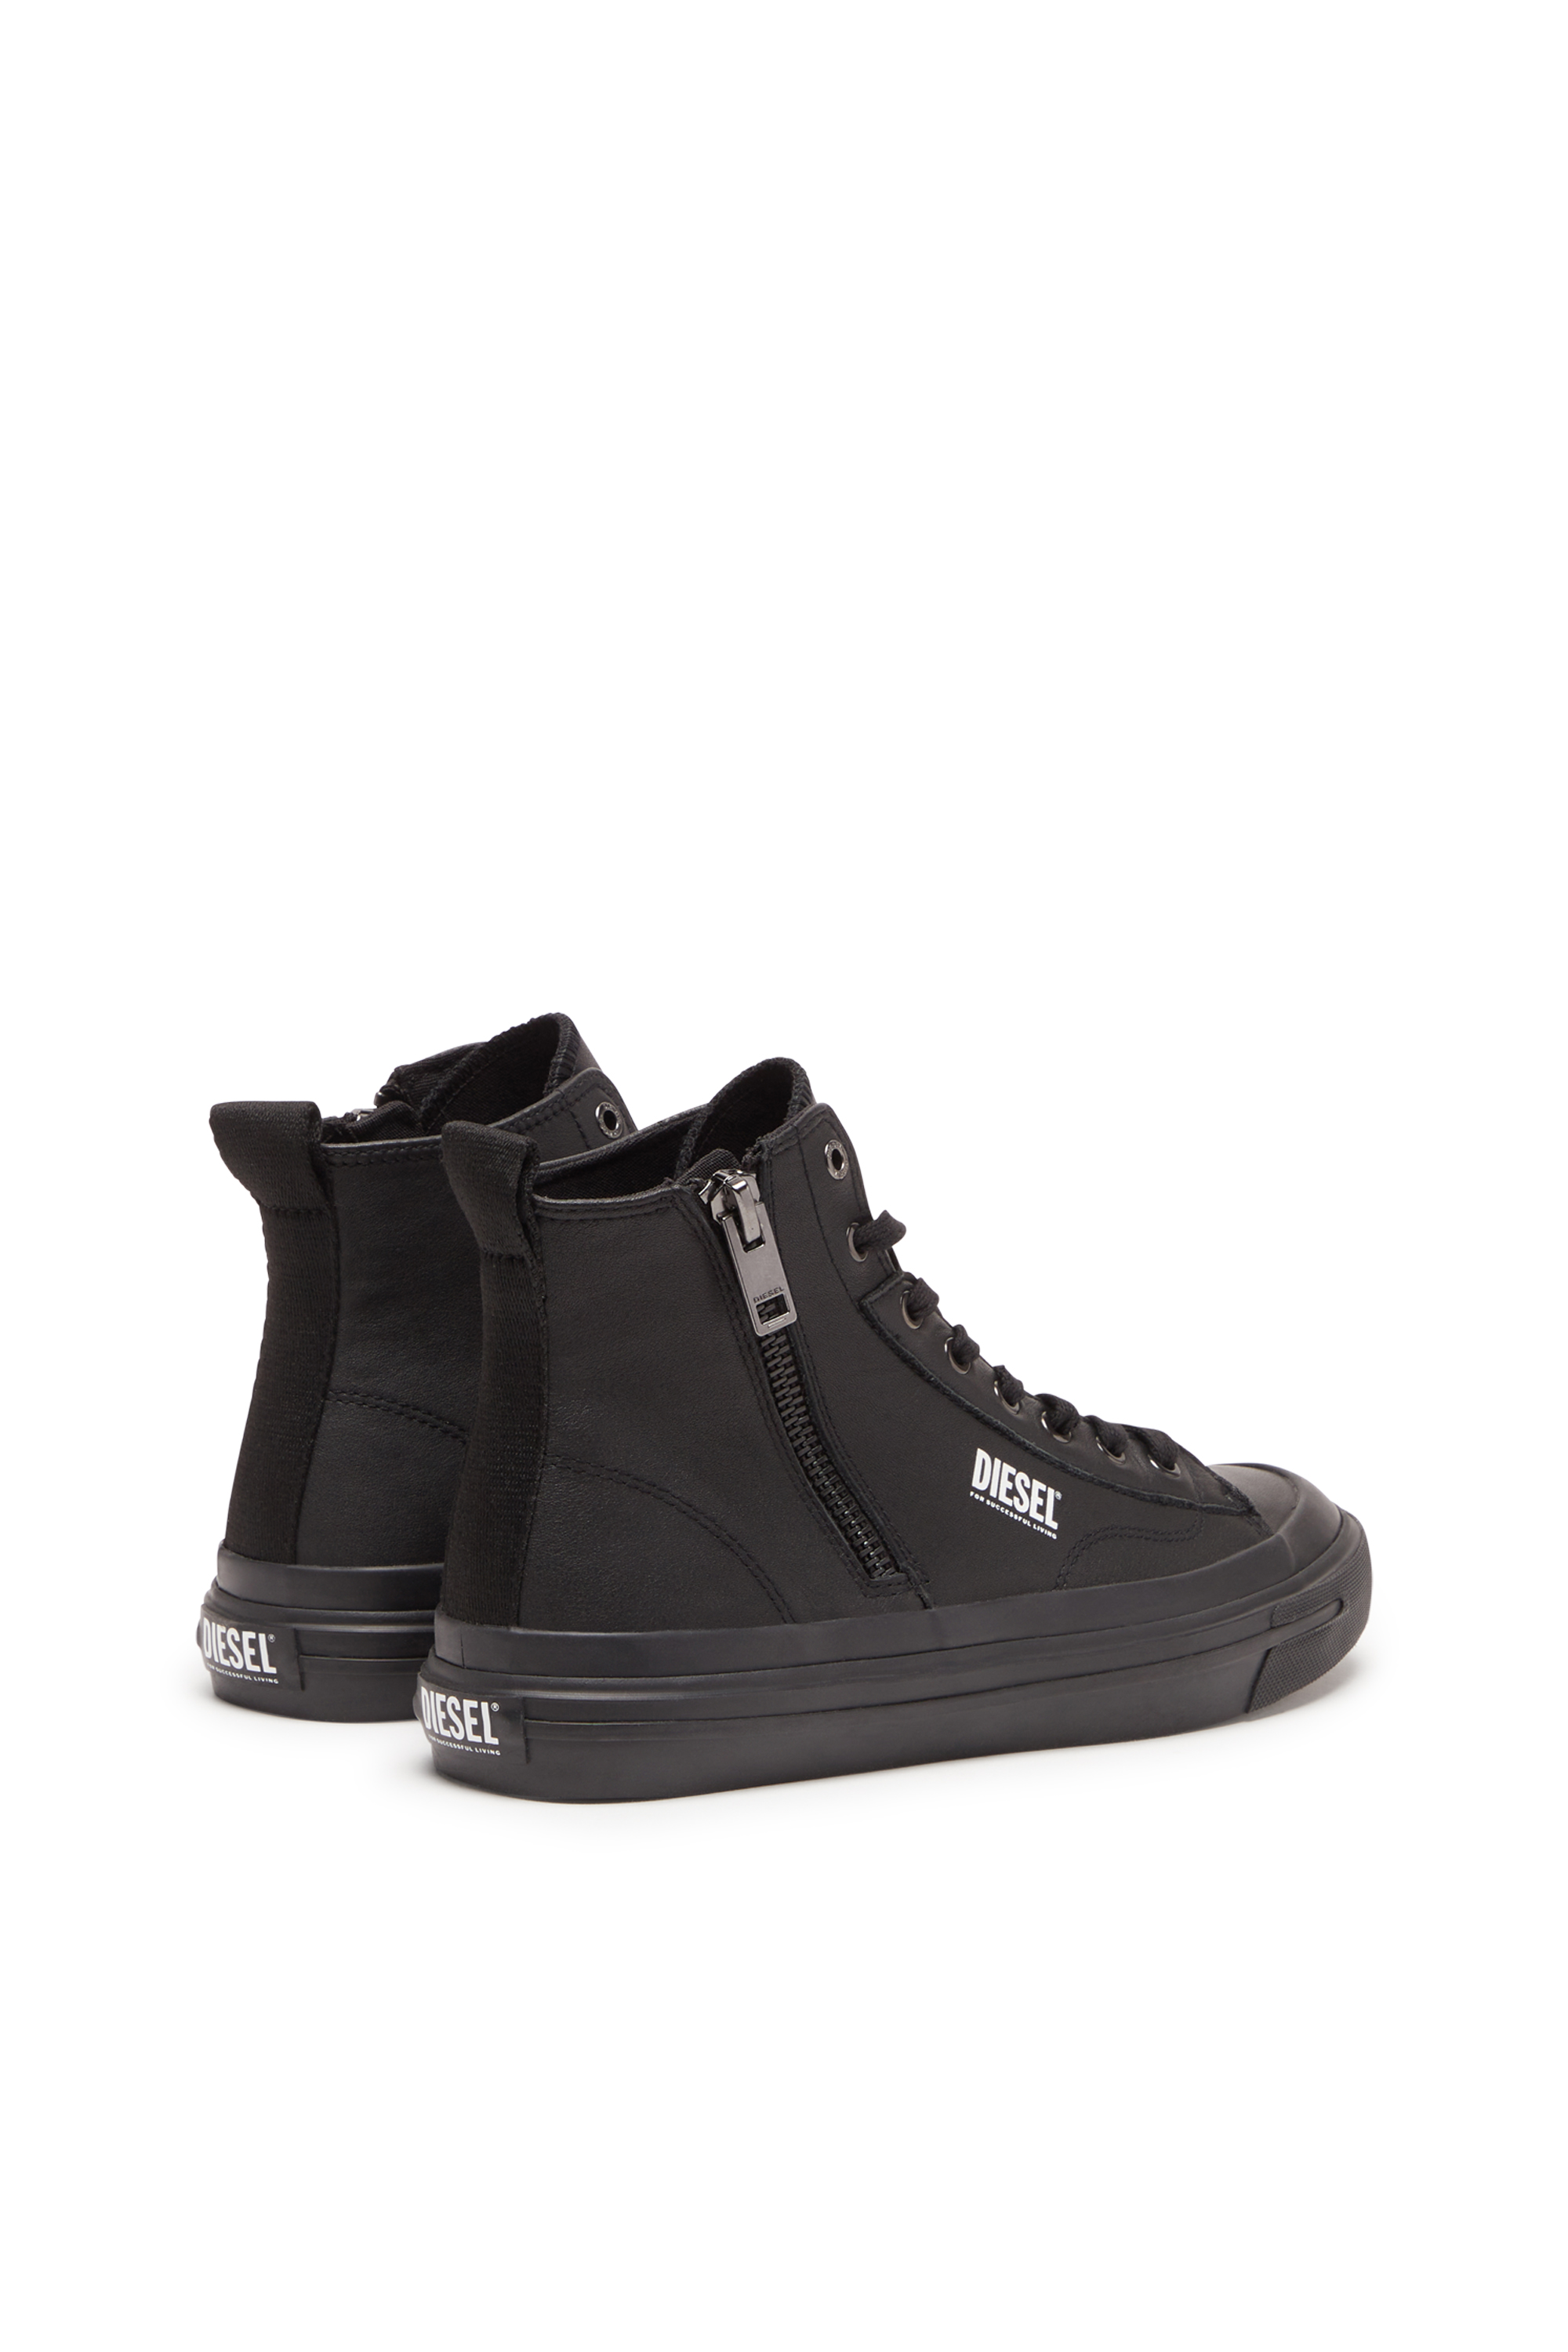 Diesel - S-ATHOS DV MID, Man S-Athos Dv Mid - High-top sneakers with side zip in Black - Image 3